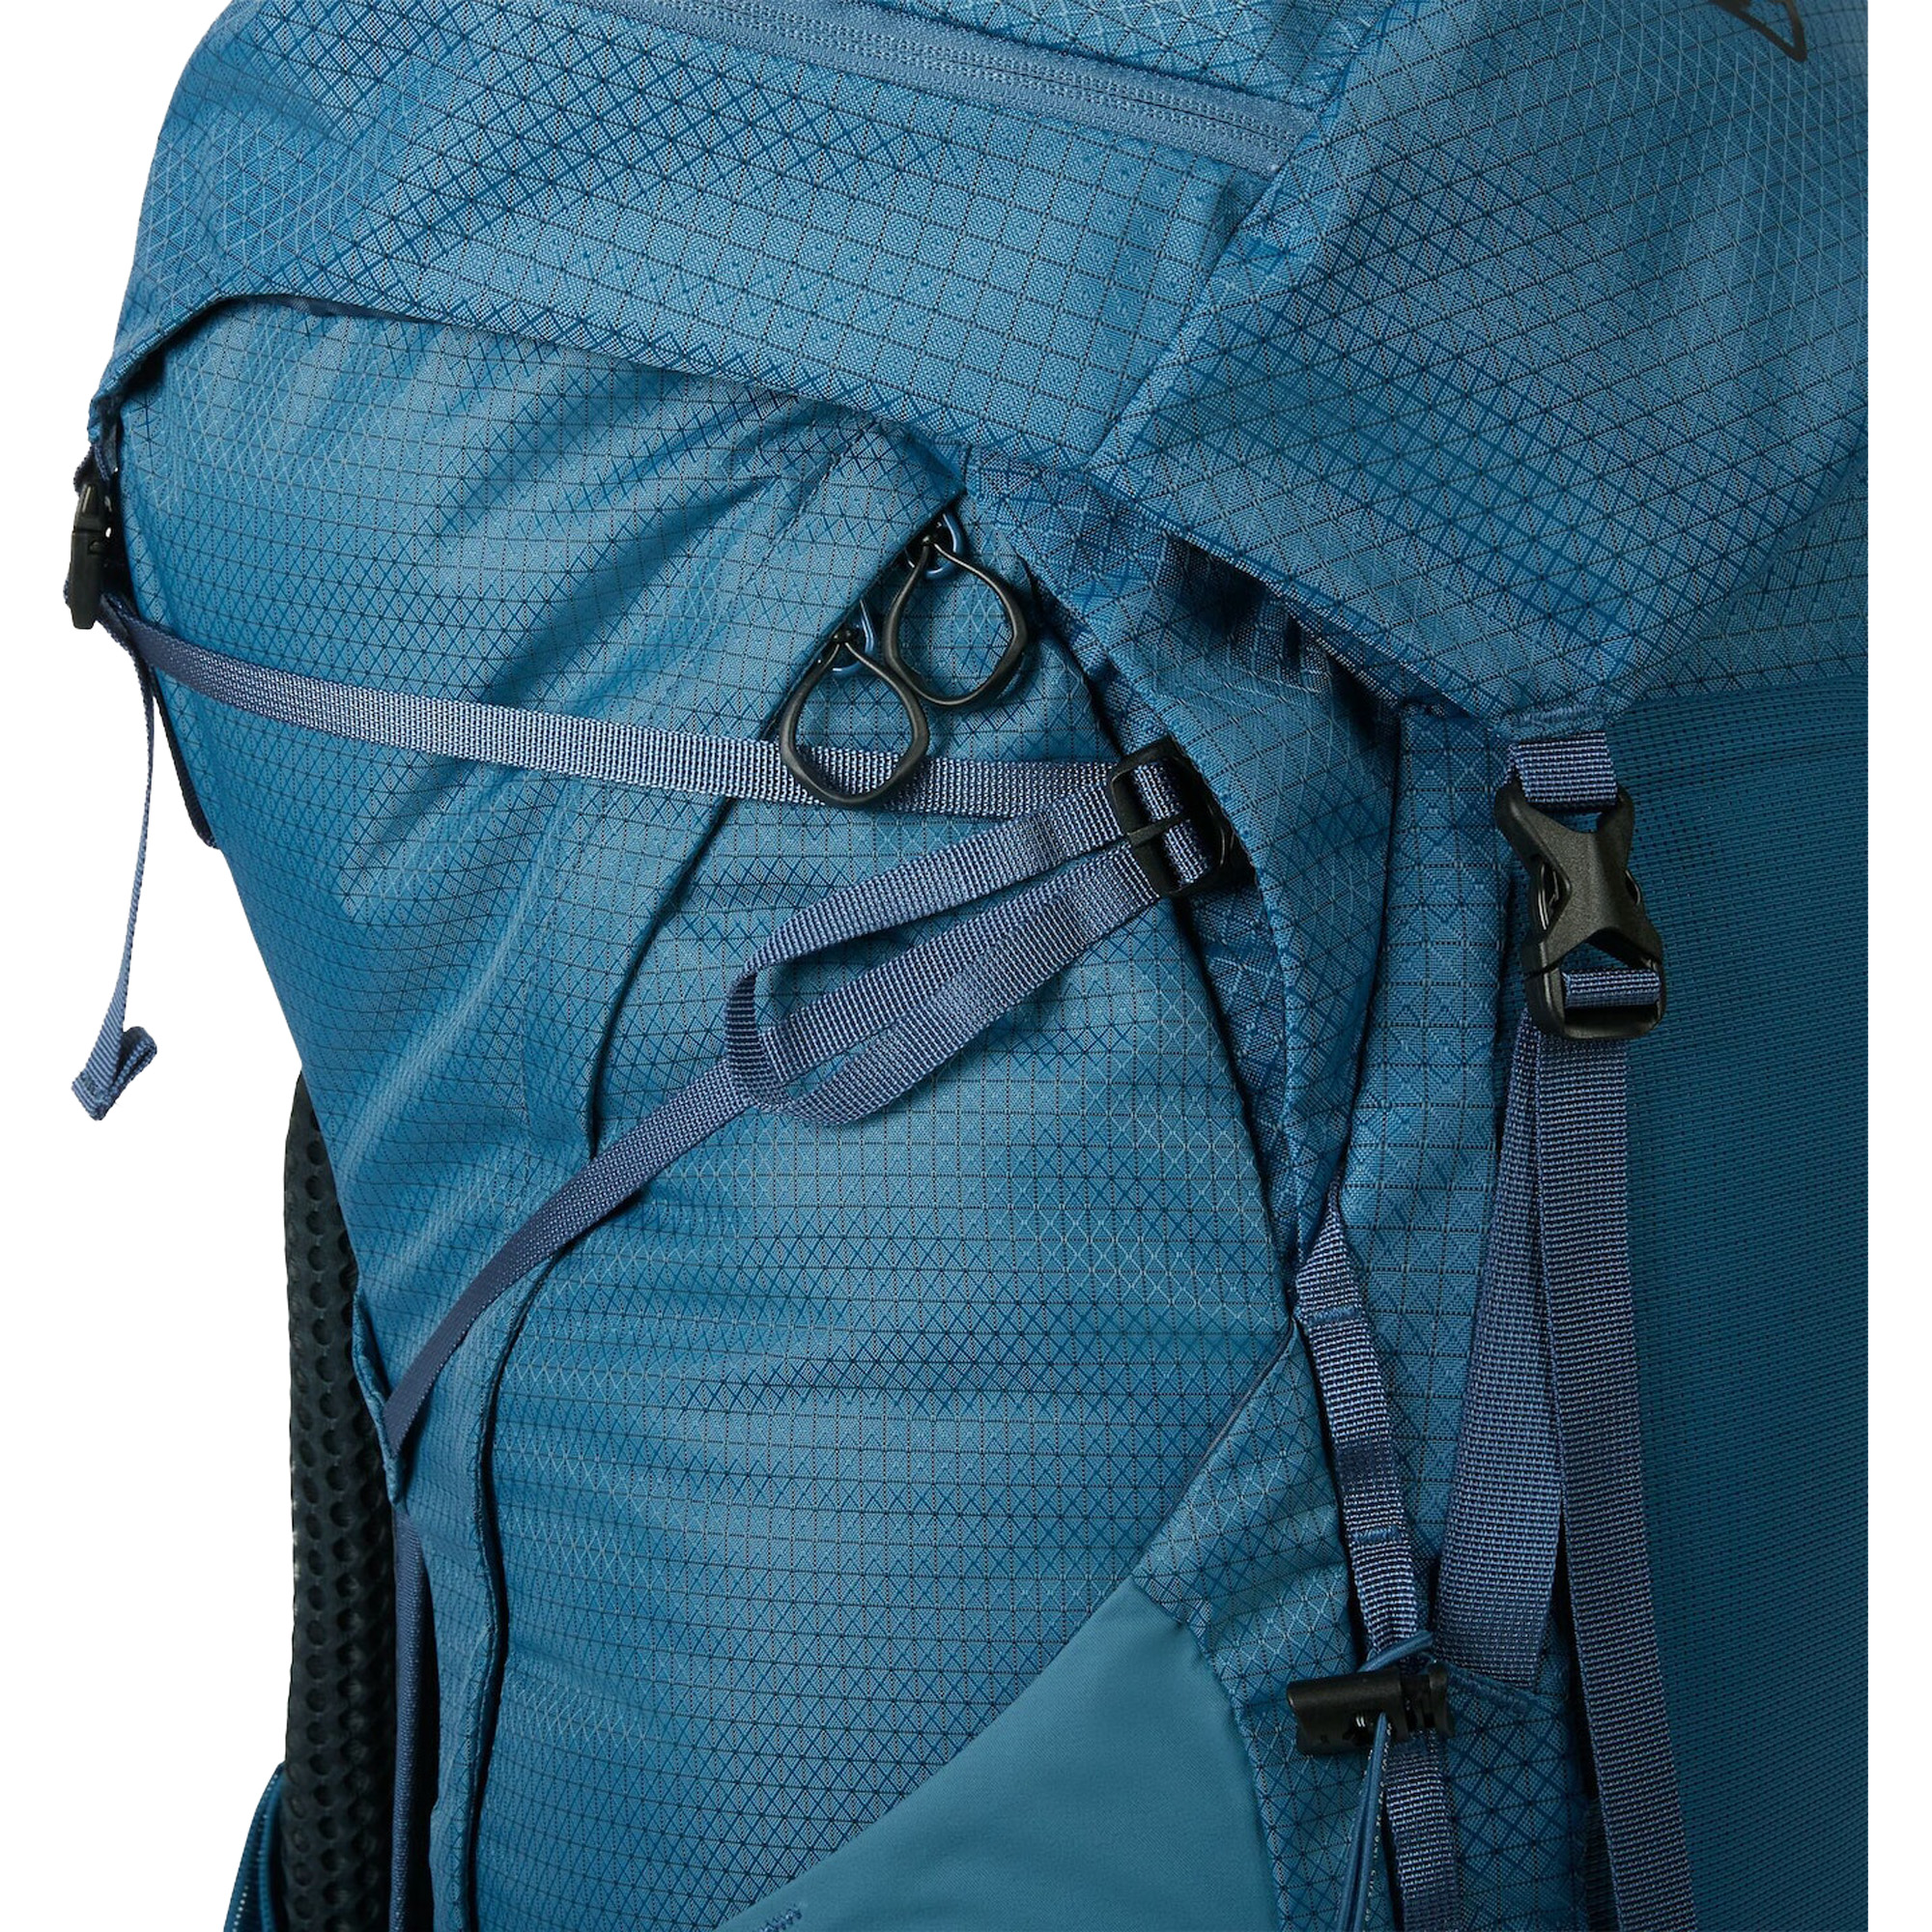 Kathmandu Valorous 58 Hiking Backpack